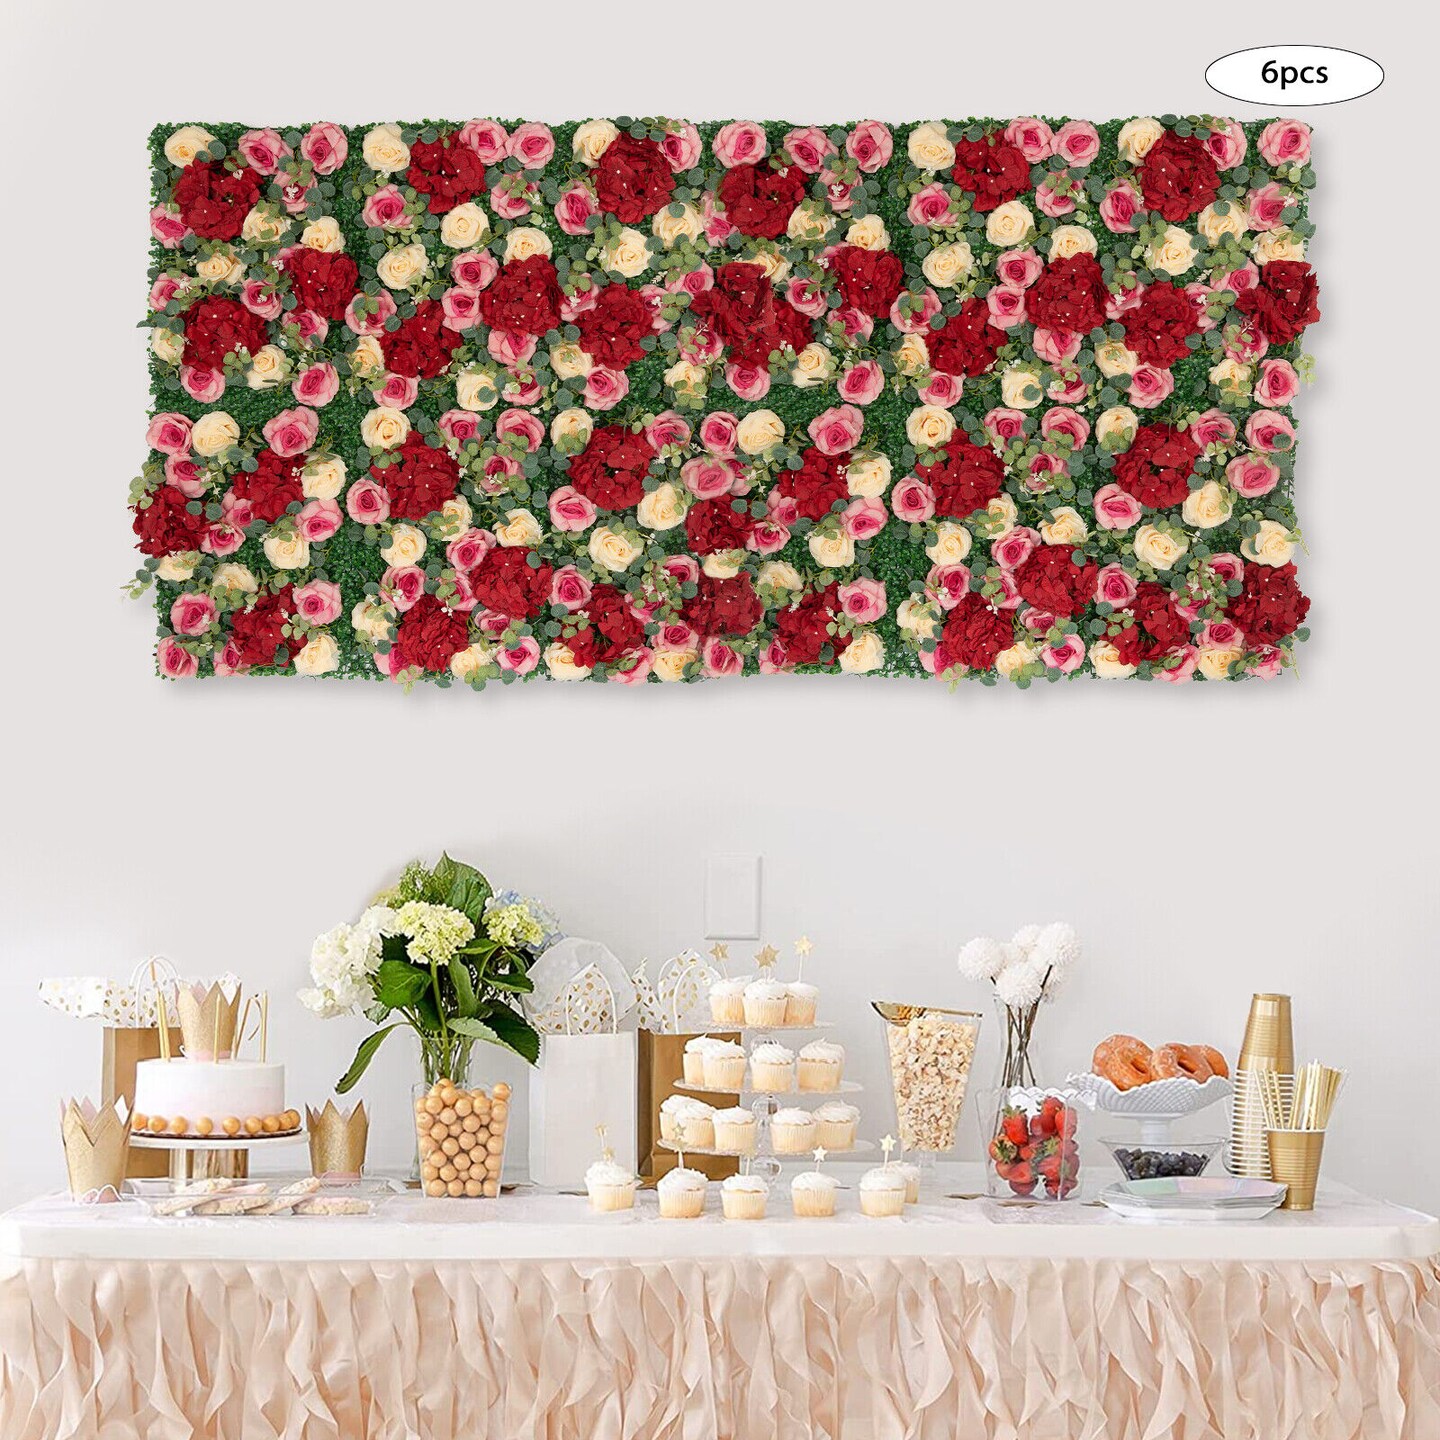 Kitcheniva Artificial Hydrangea Flower Wall Panel Backdrop 6 Pcs